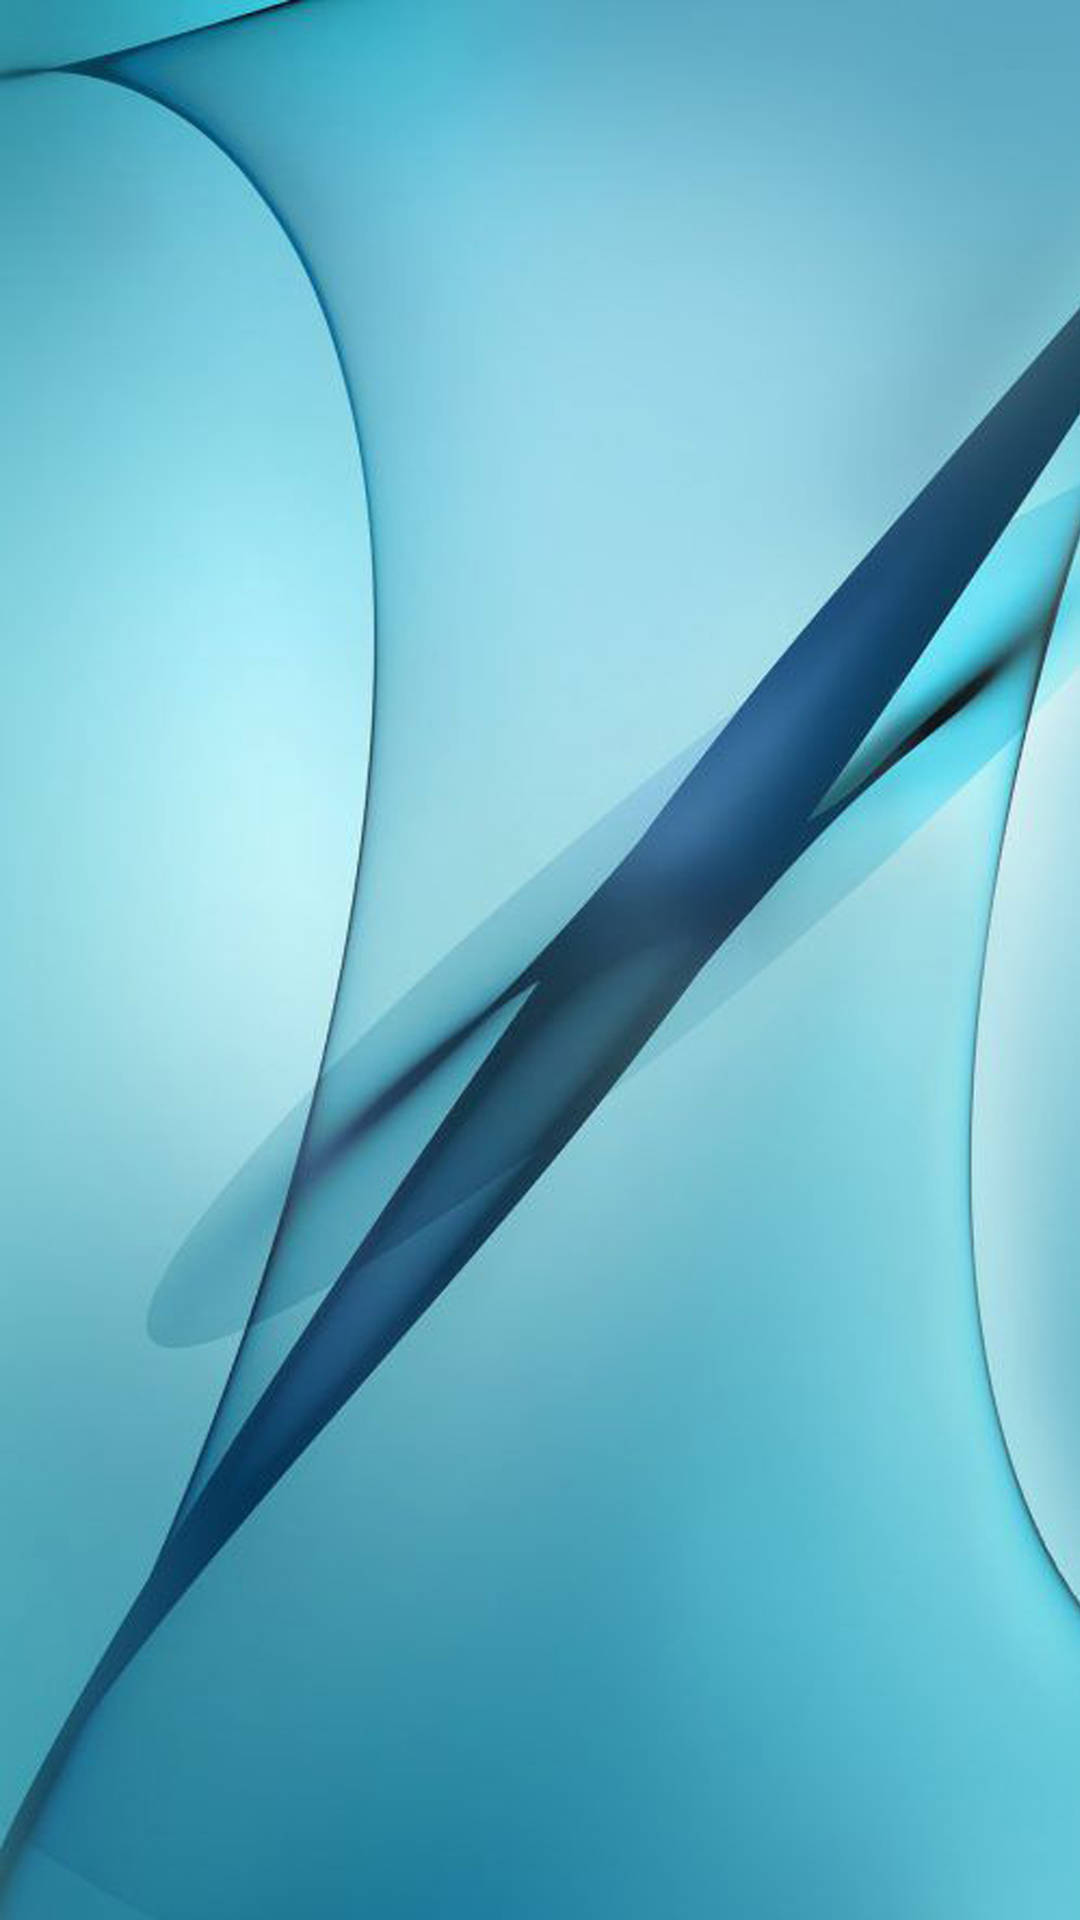 Papelde Parede Para Computador Ou Celular Com Samsung Galaxy J7 Na Cor Azul Cerúleo E Com Padrão Abstrato. Papel de Parede